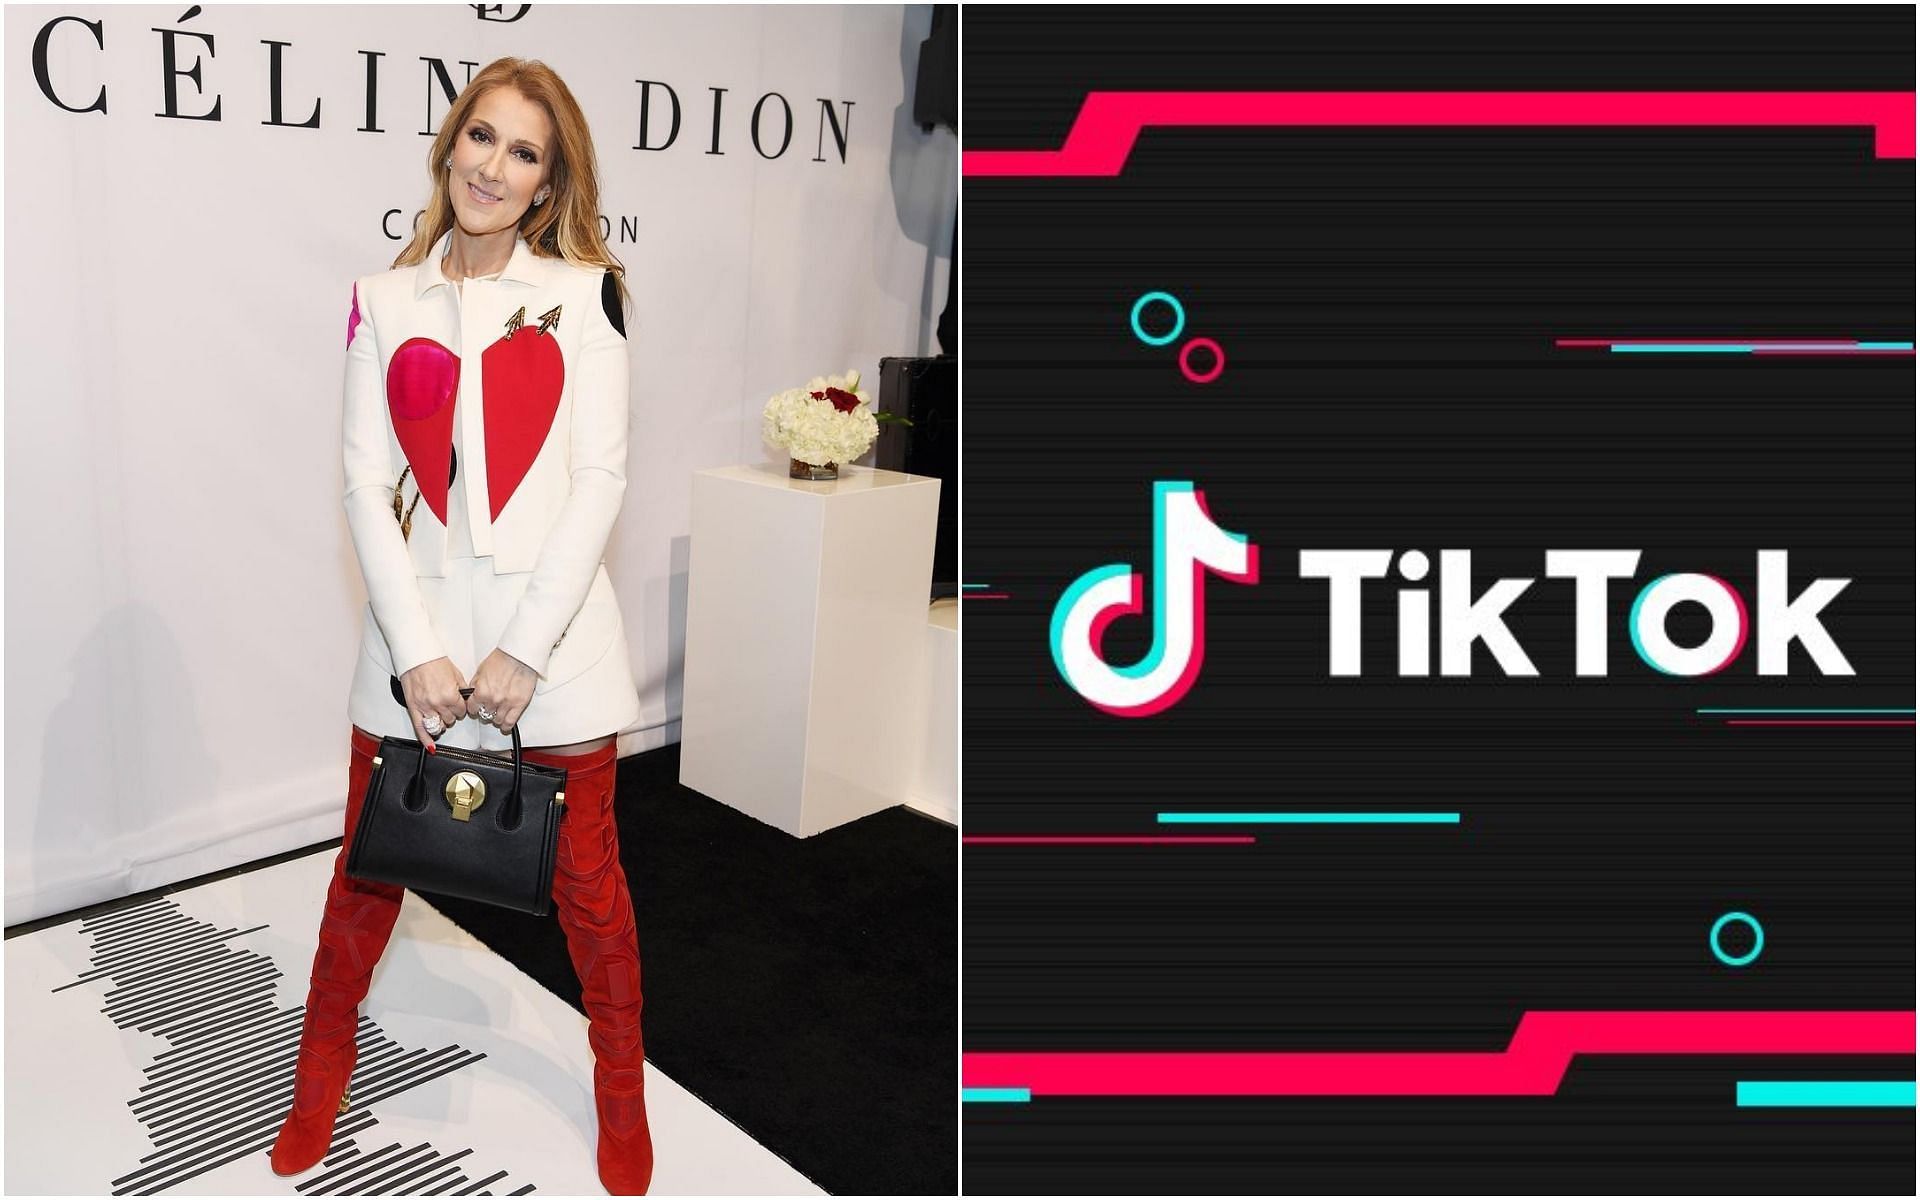 Celine Dion Challenge is going viral on TikTok (Images via Instagram/@celinedion and Facebook/@tiktok)